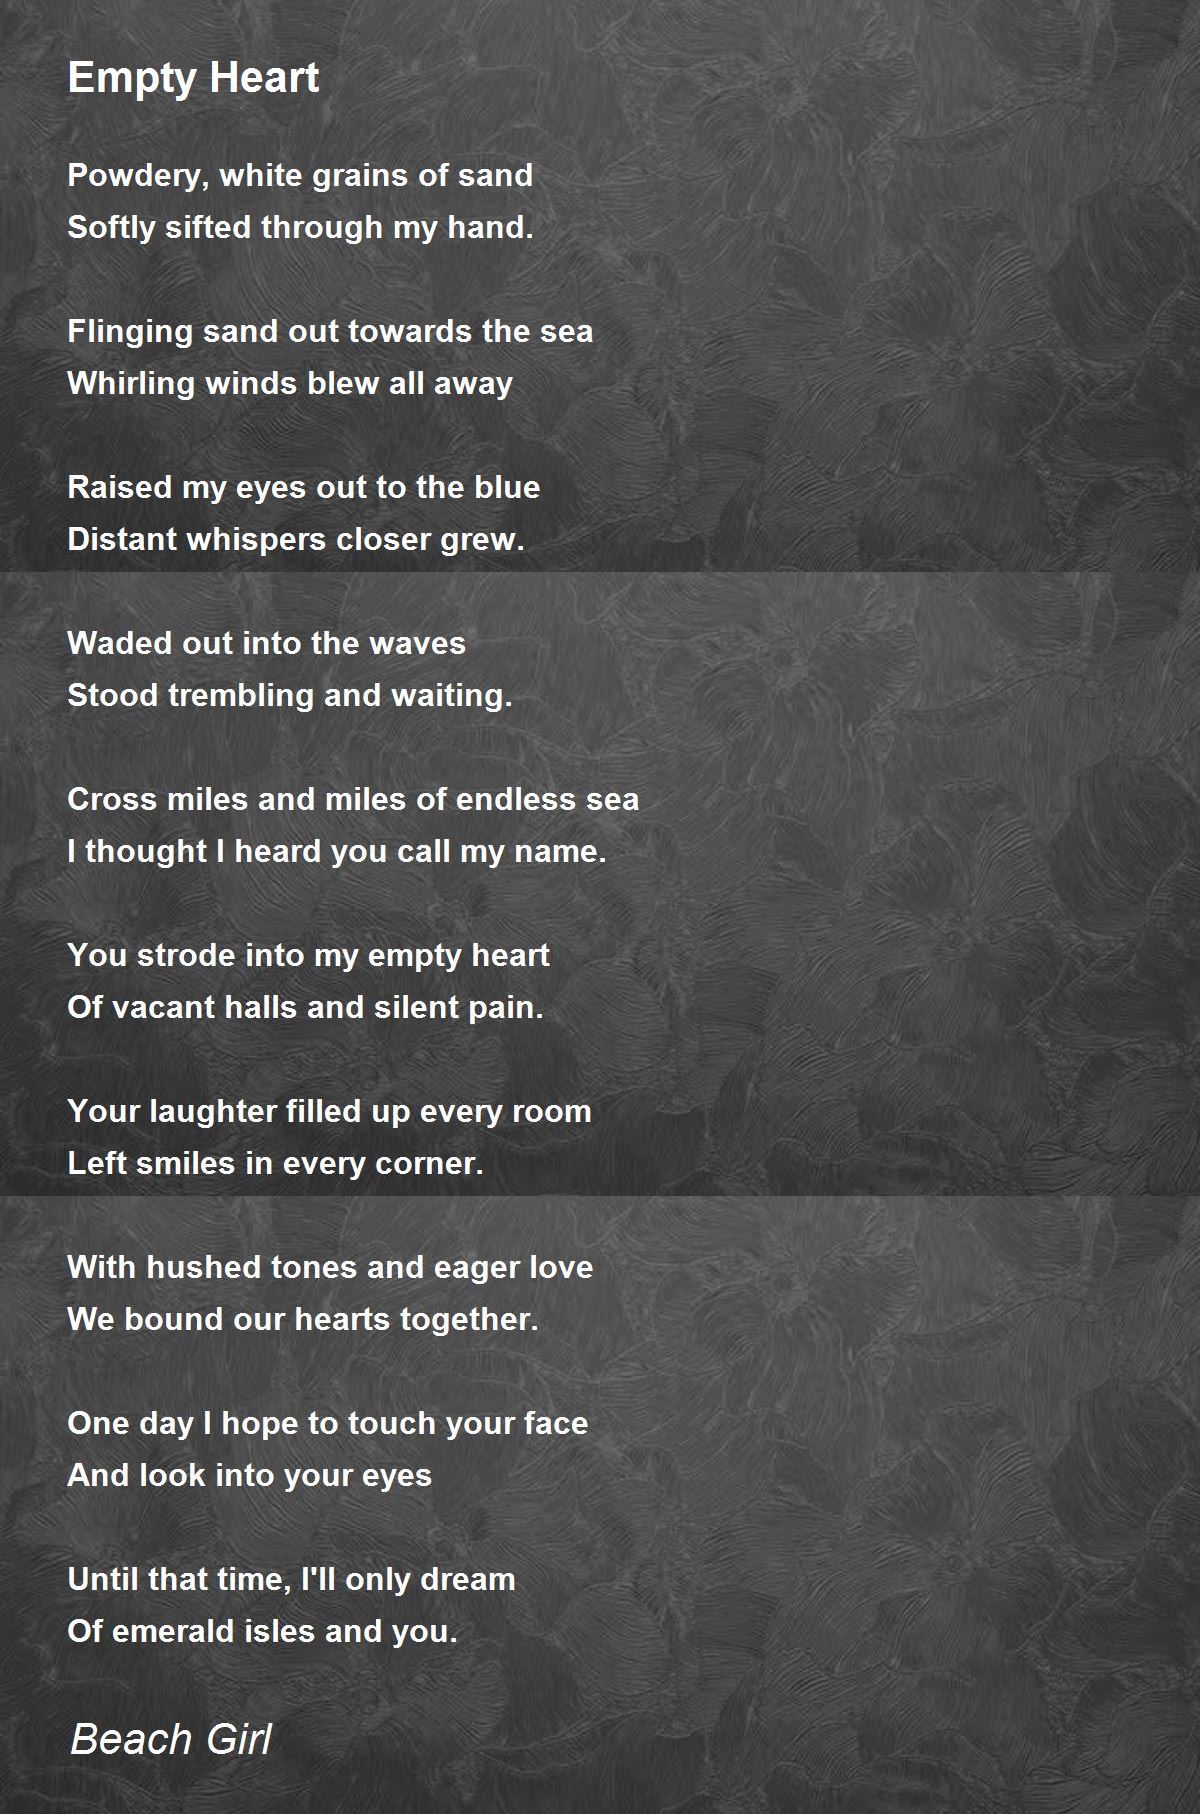 Empty Heart by Beach Girl - Empty Heart Poem